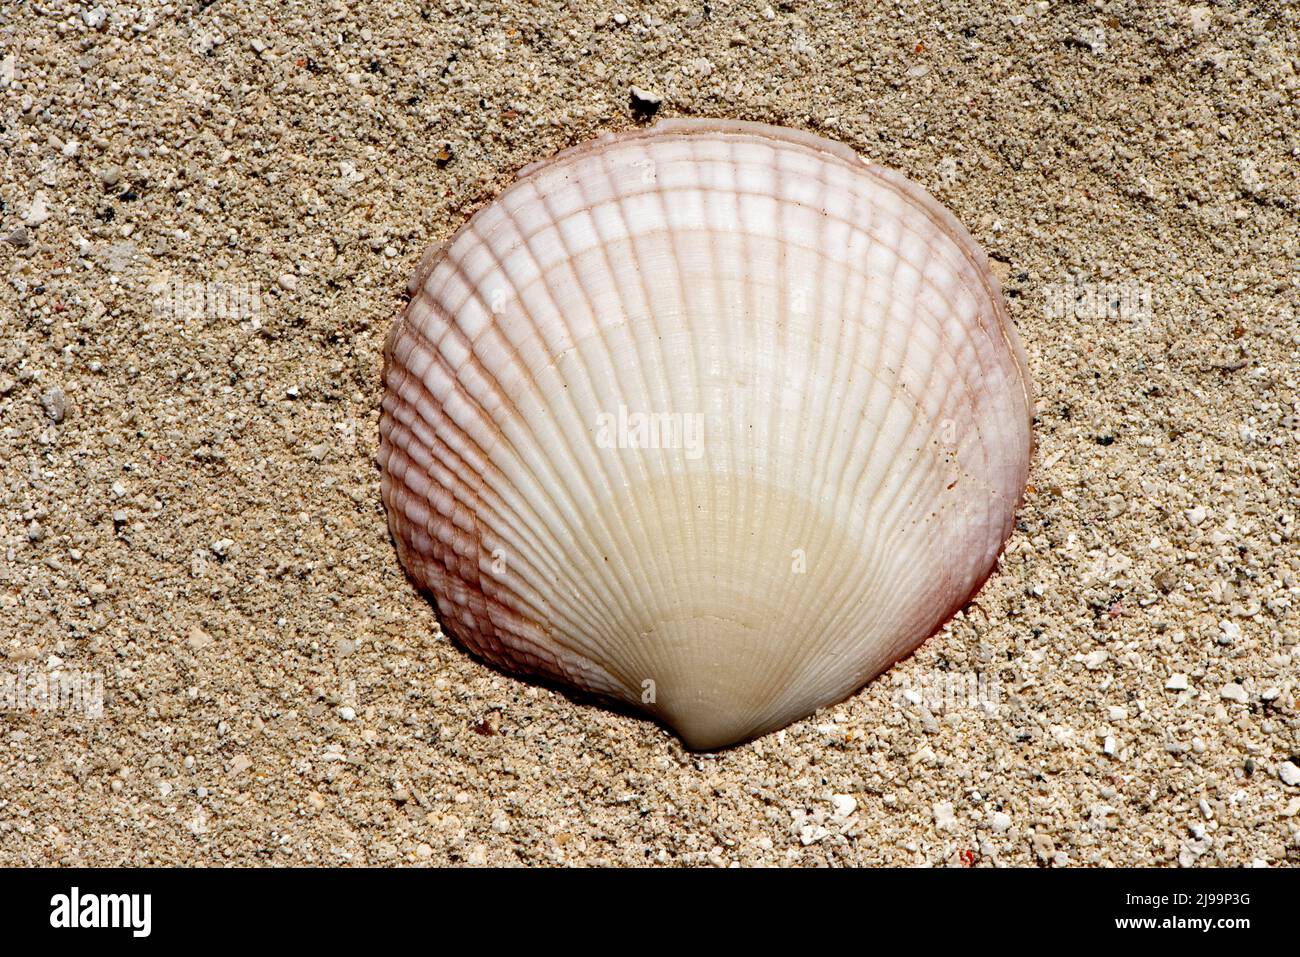 beautiful shells